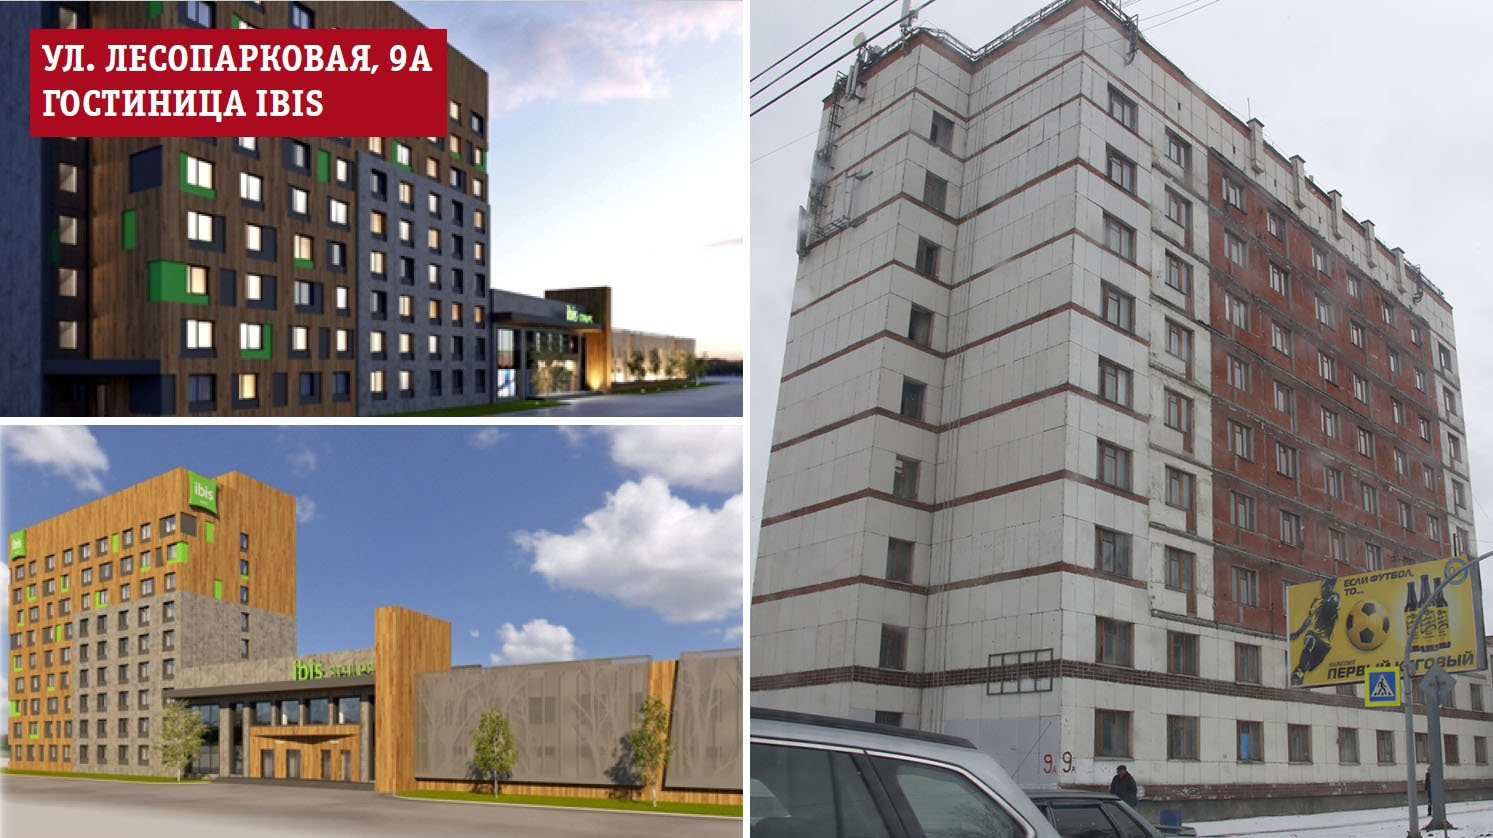 Трёхзвёздочную гостиницу международной сети Ibis откроют в Челябинске в здании бывшего профилактория на Лесопарковой<br><br>